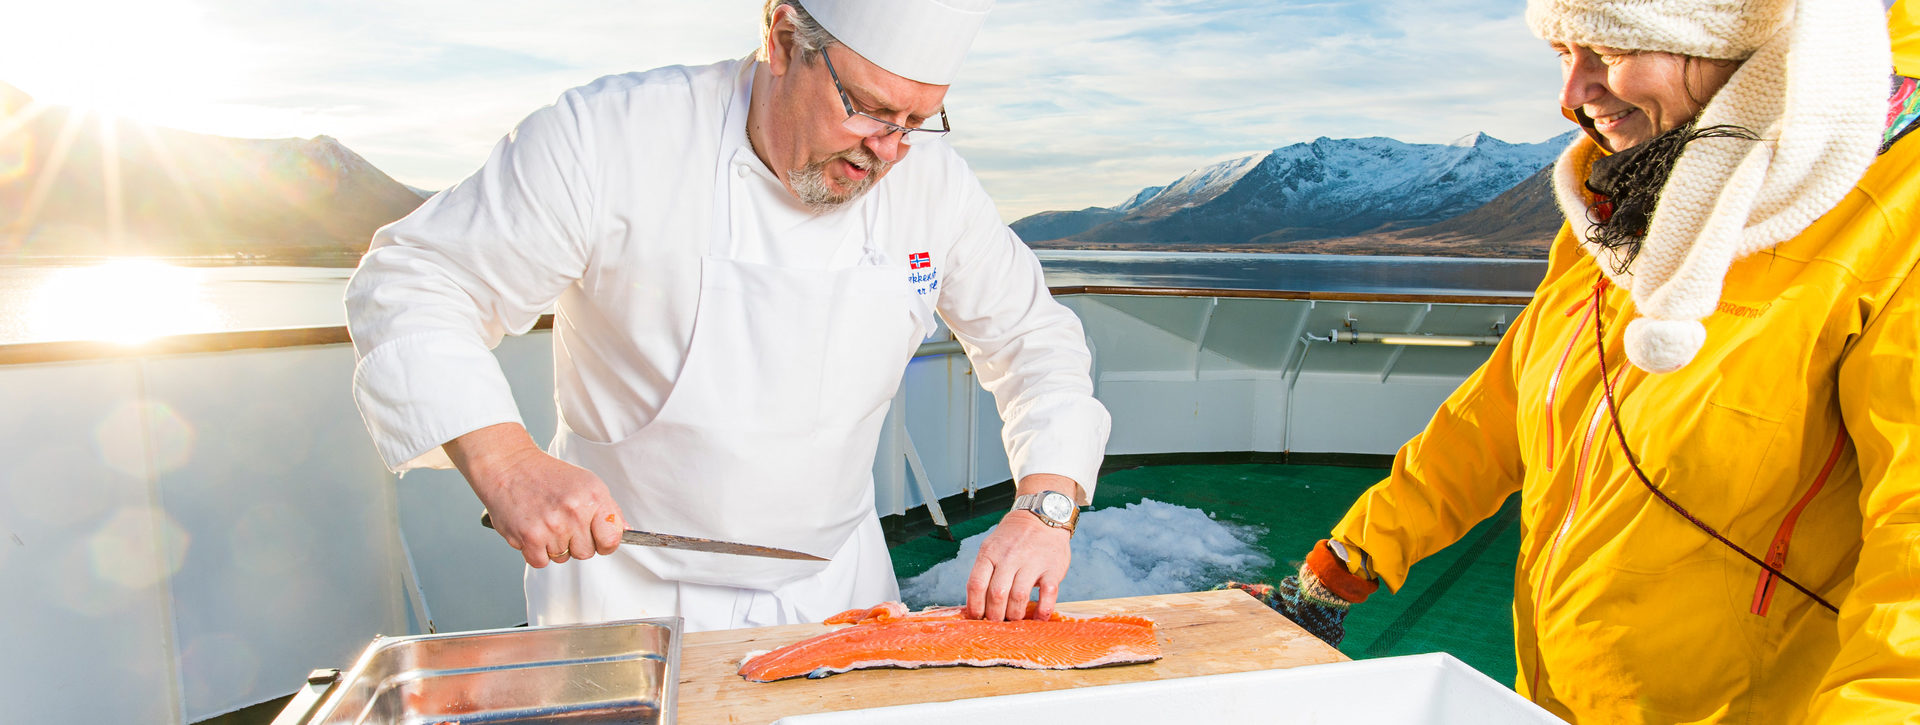 Hurtigruten se spojuje s EAT, cílem je udržitelnější kuchyně